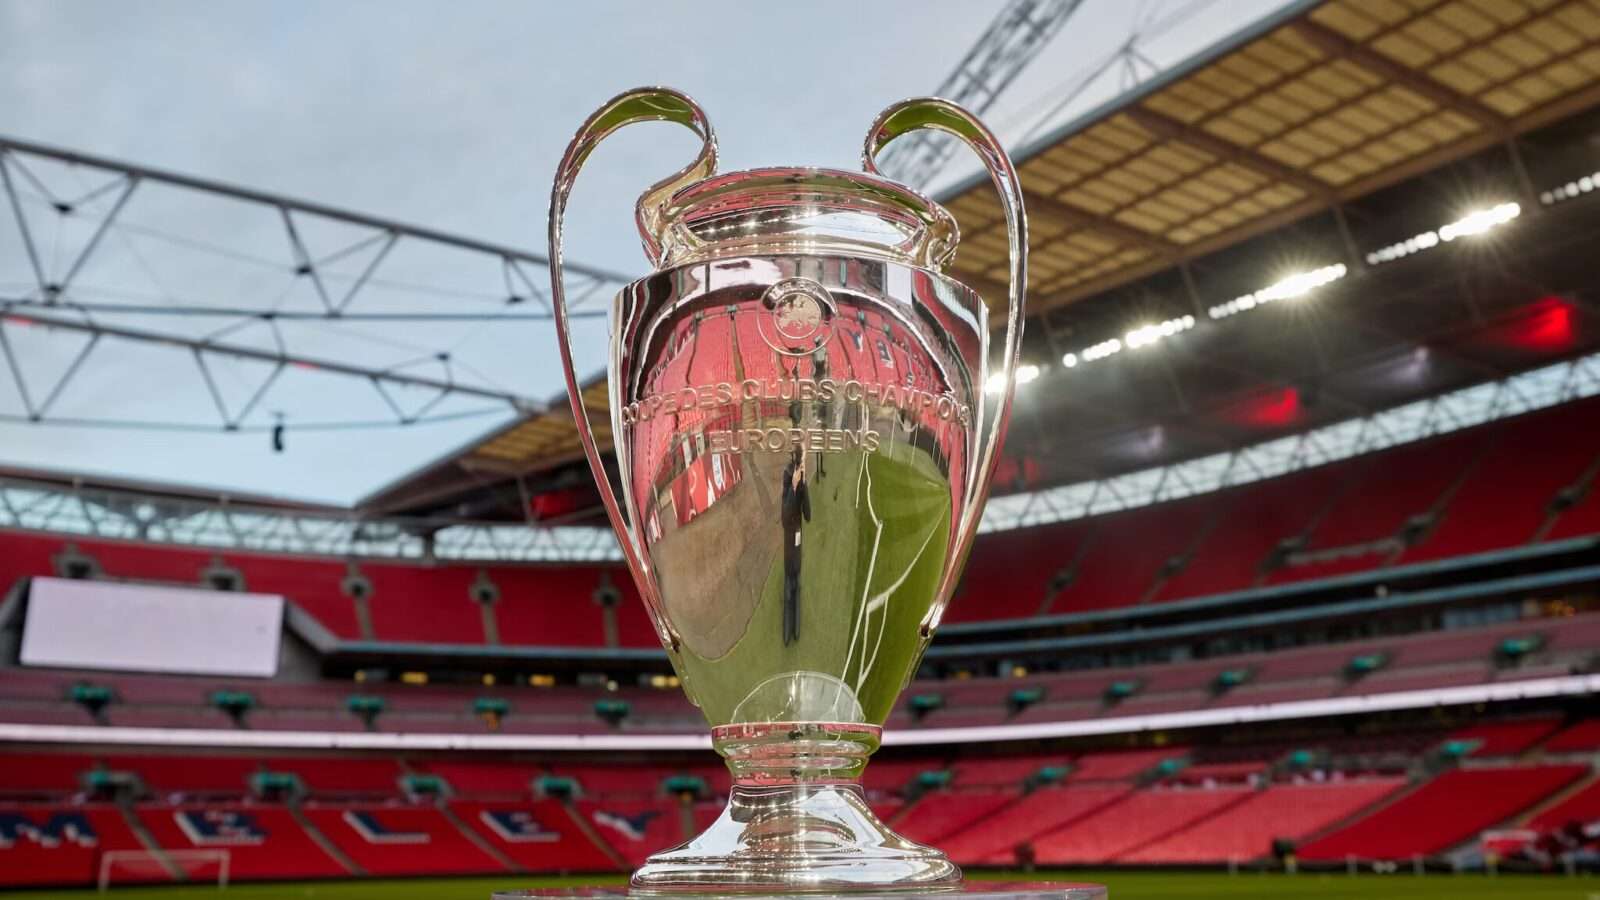 UEFA Champions league finals trophy